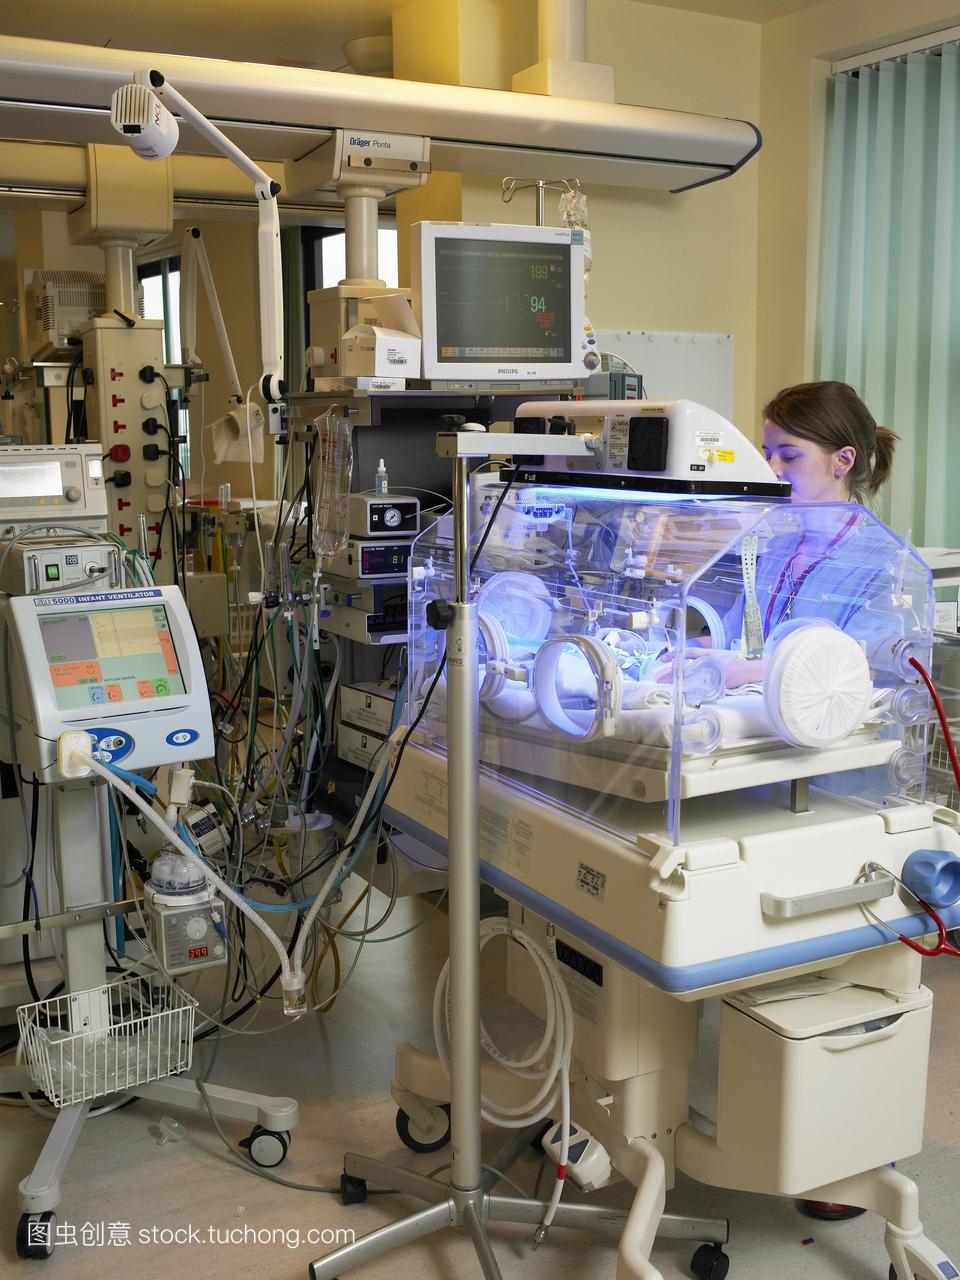 模型发布。光疗。护士照顾新生儿接受光疗治疗